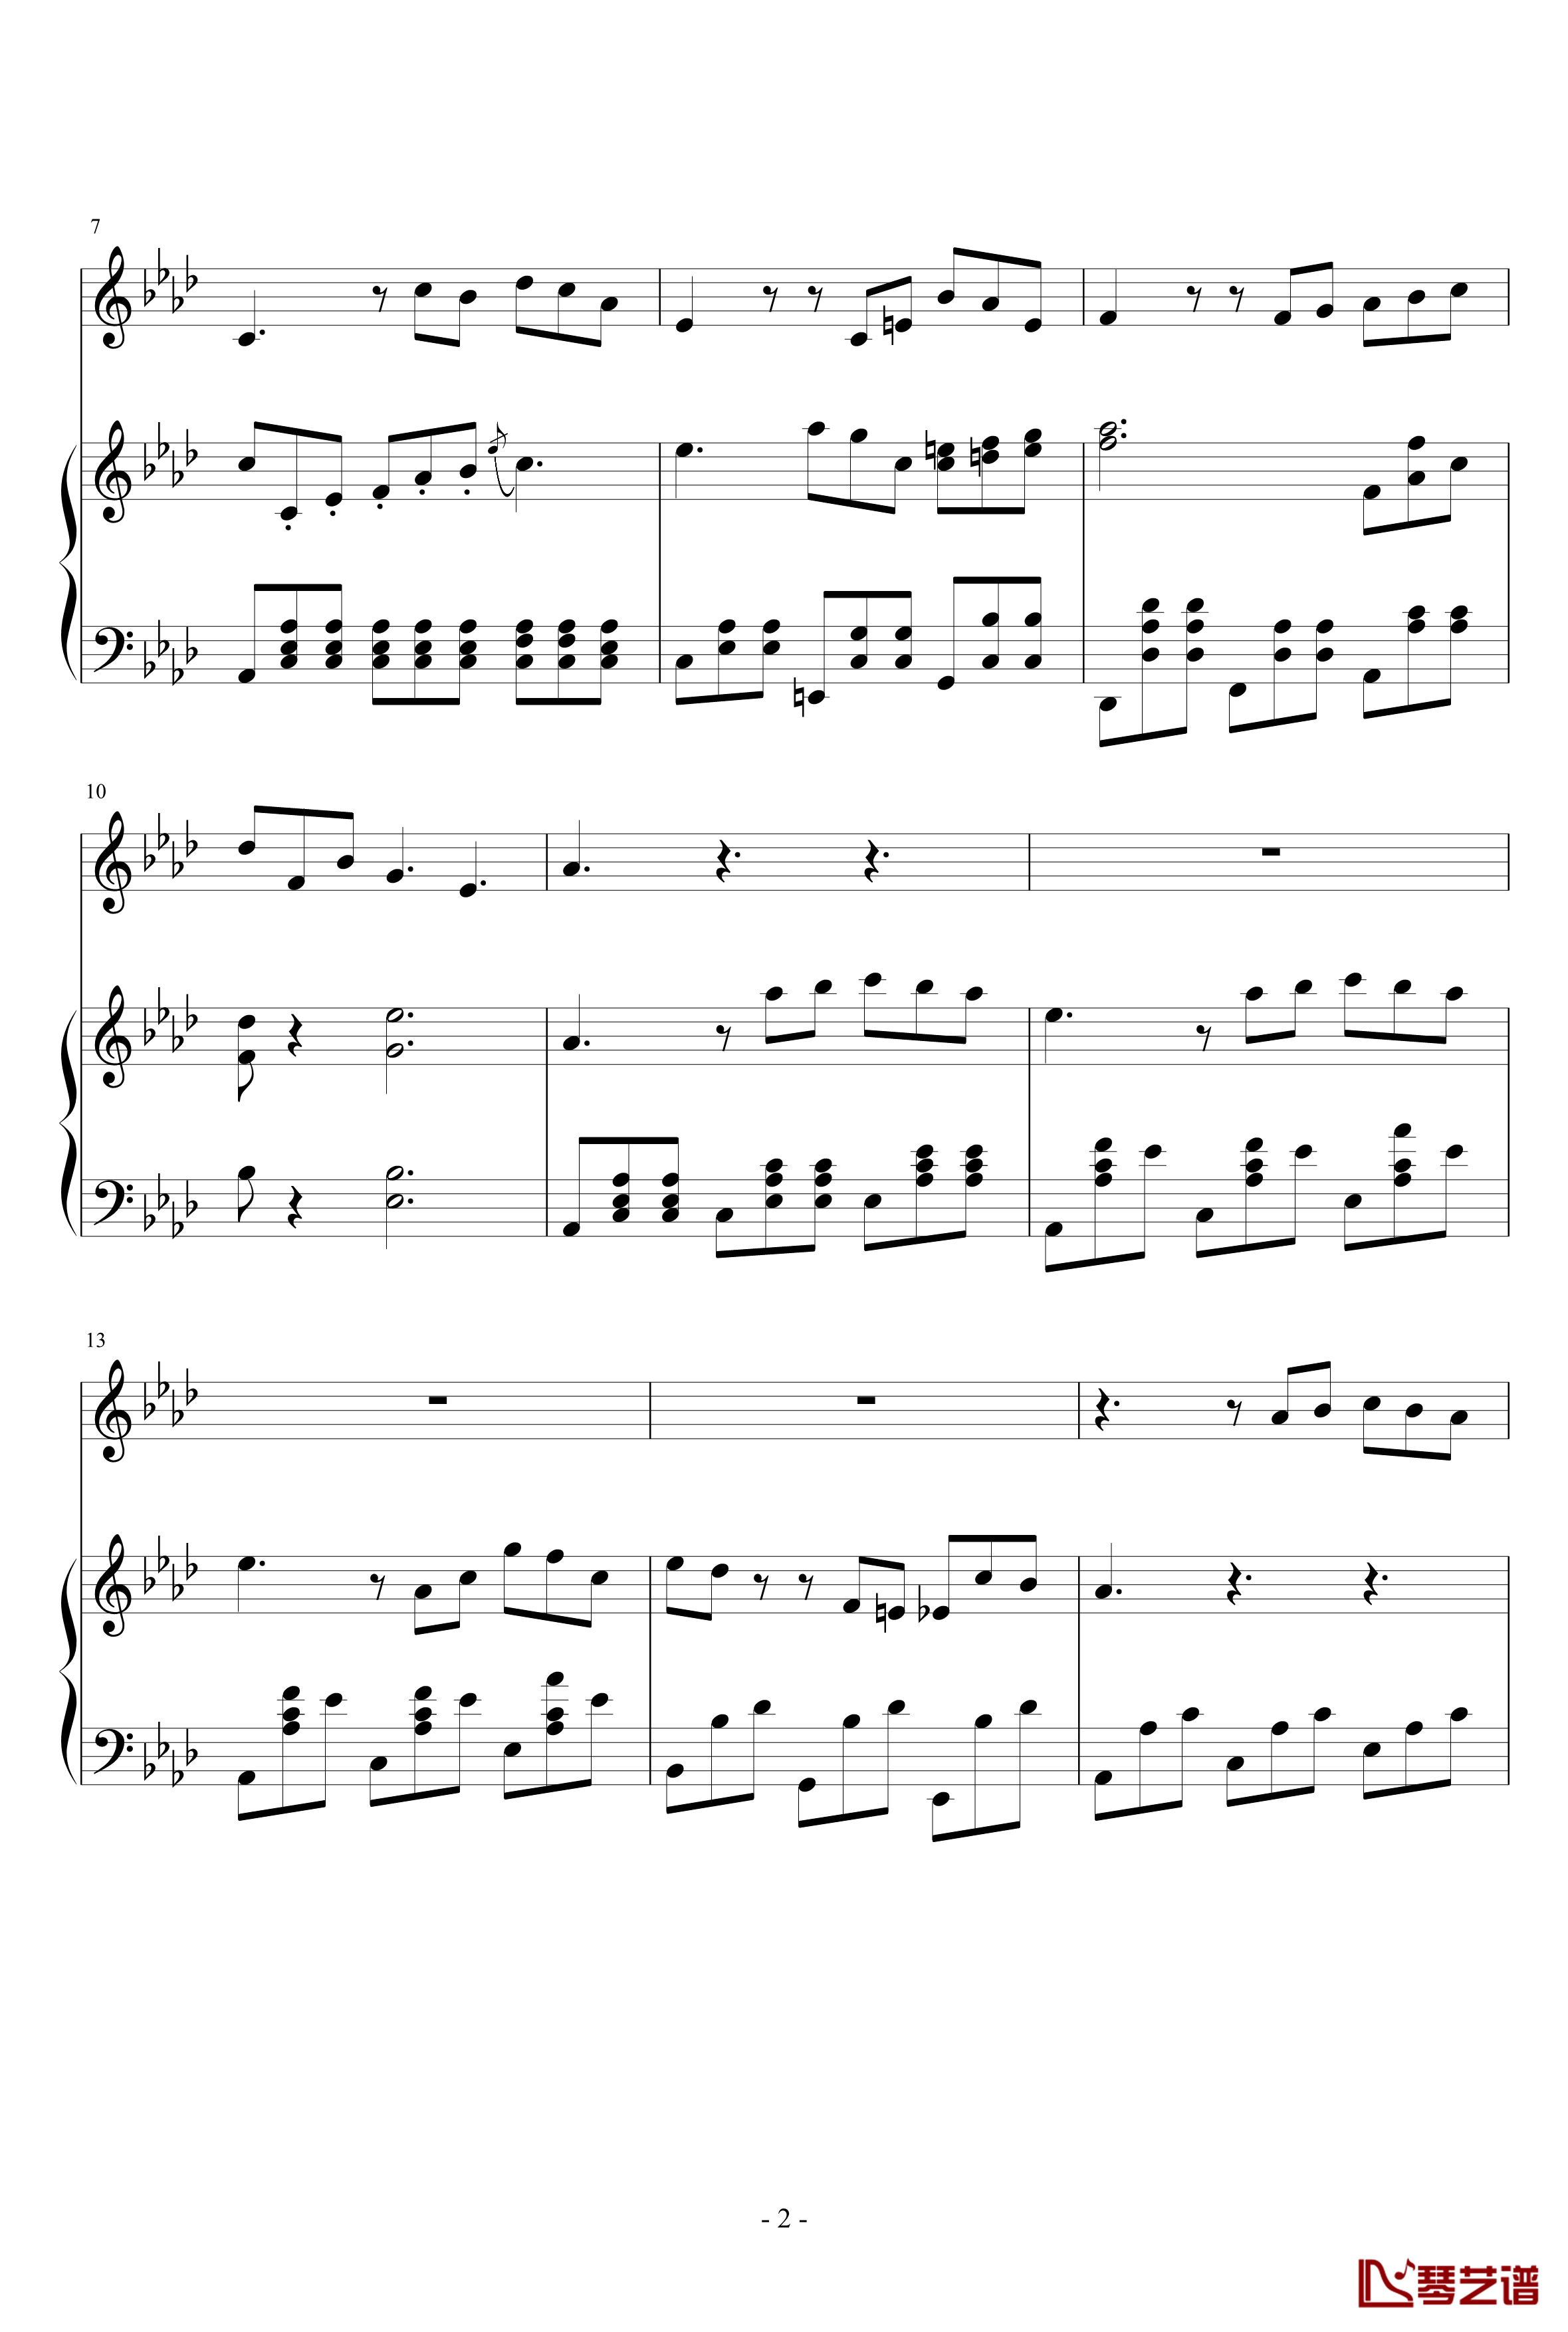 Art Song for winter钢琴谱-nzh19342